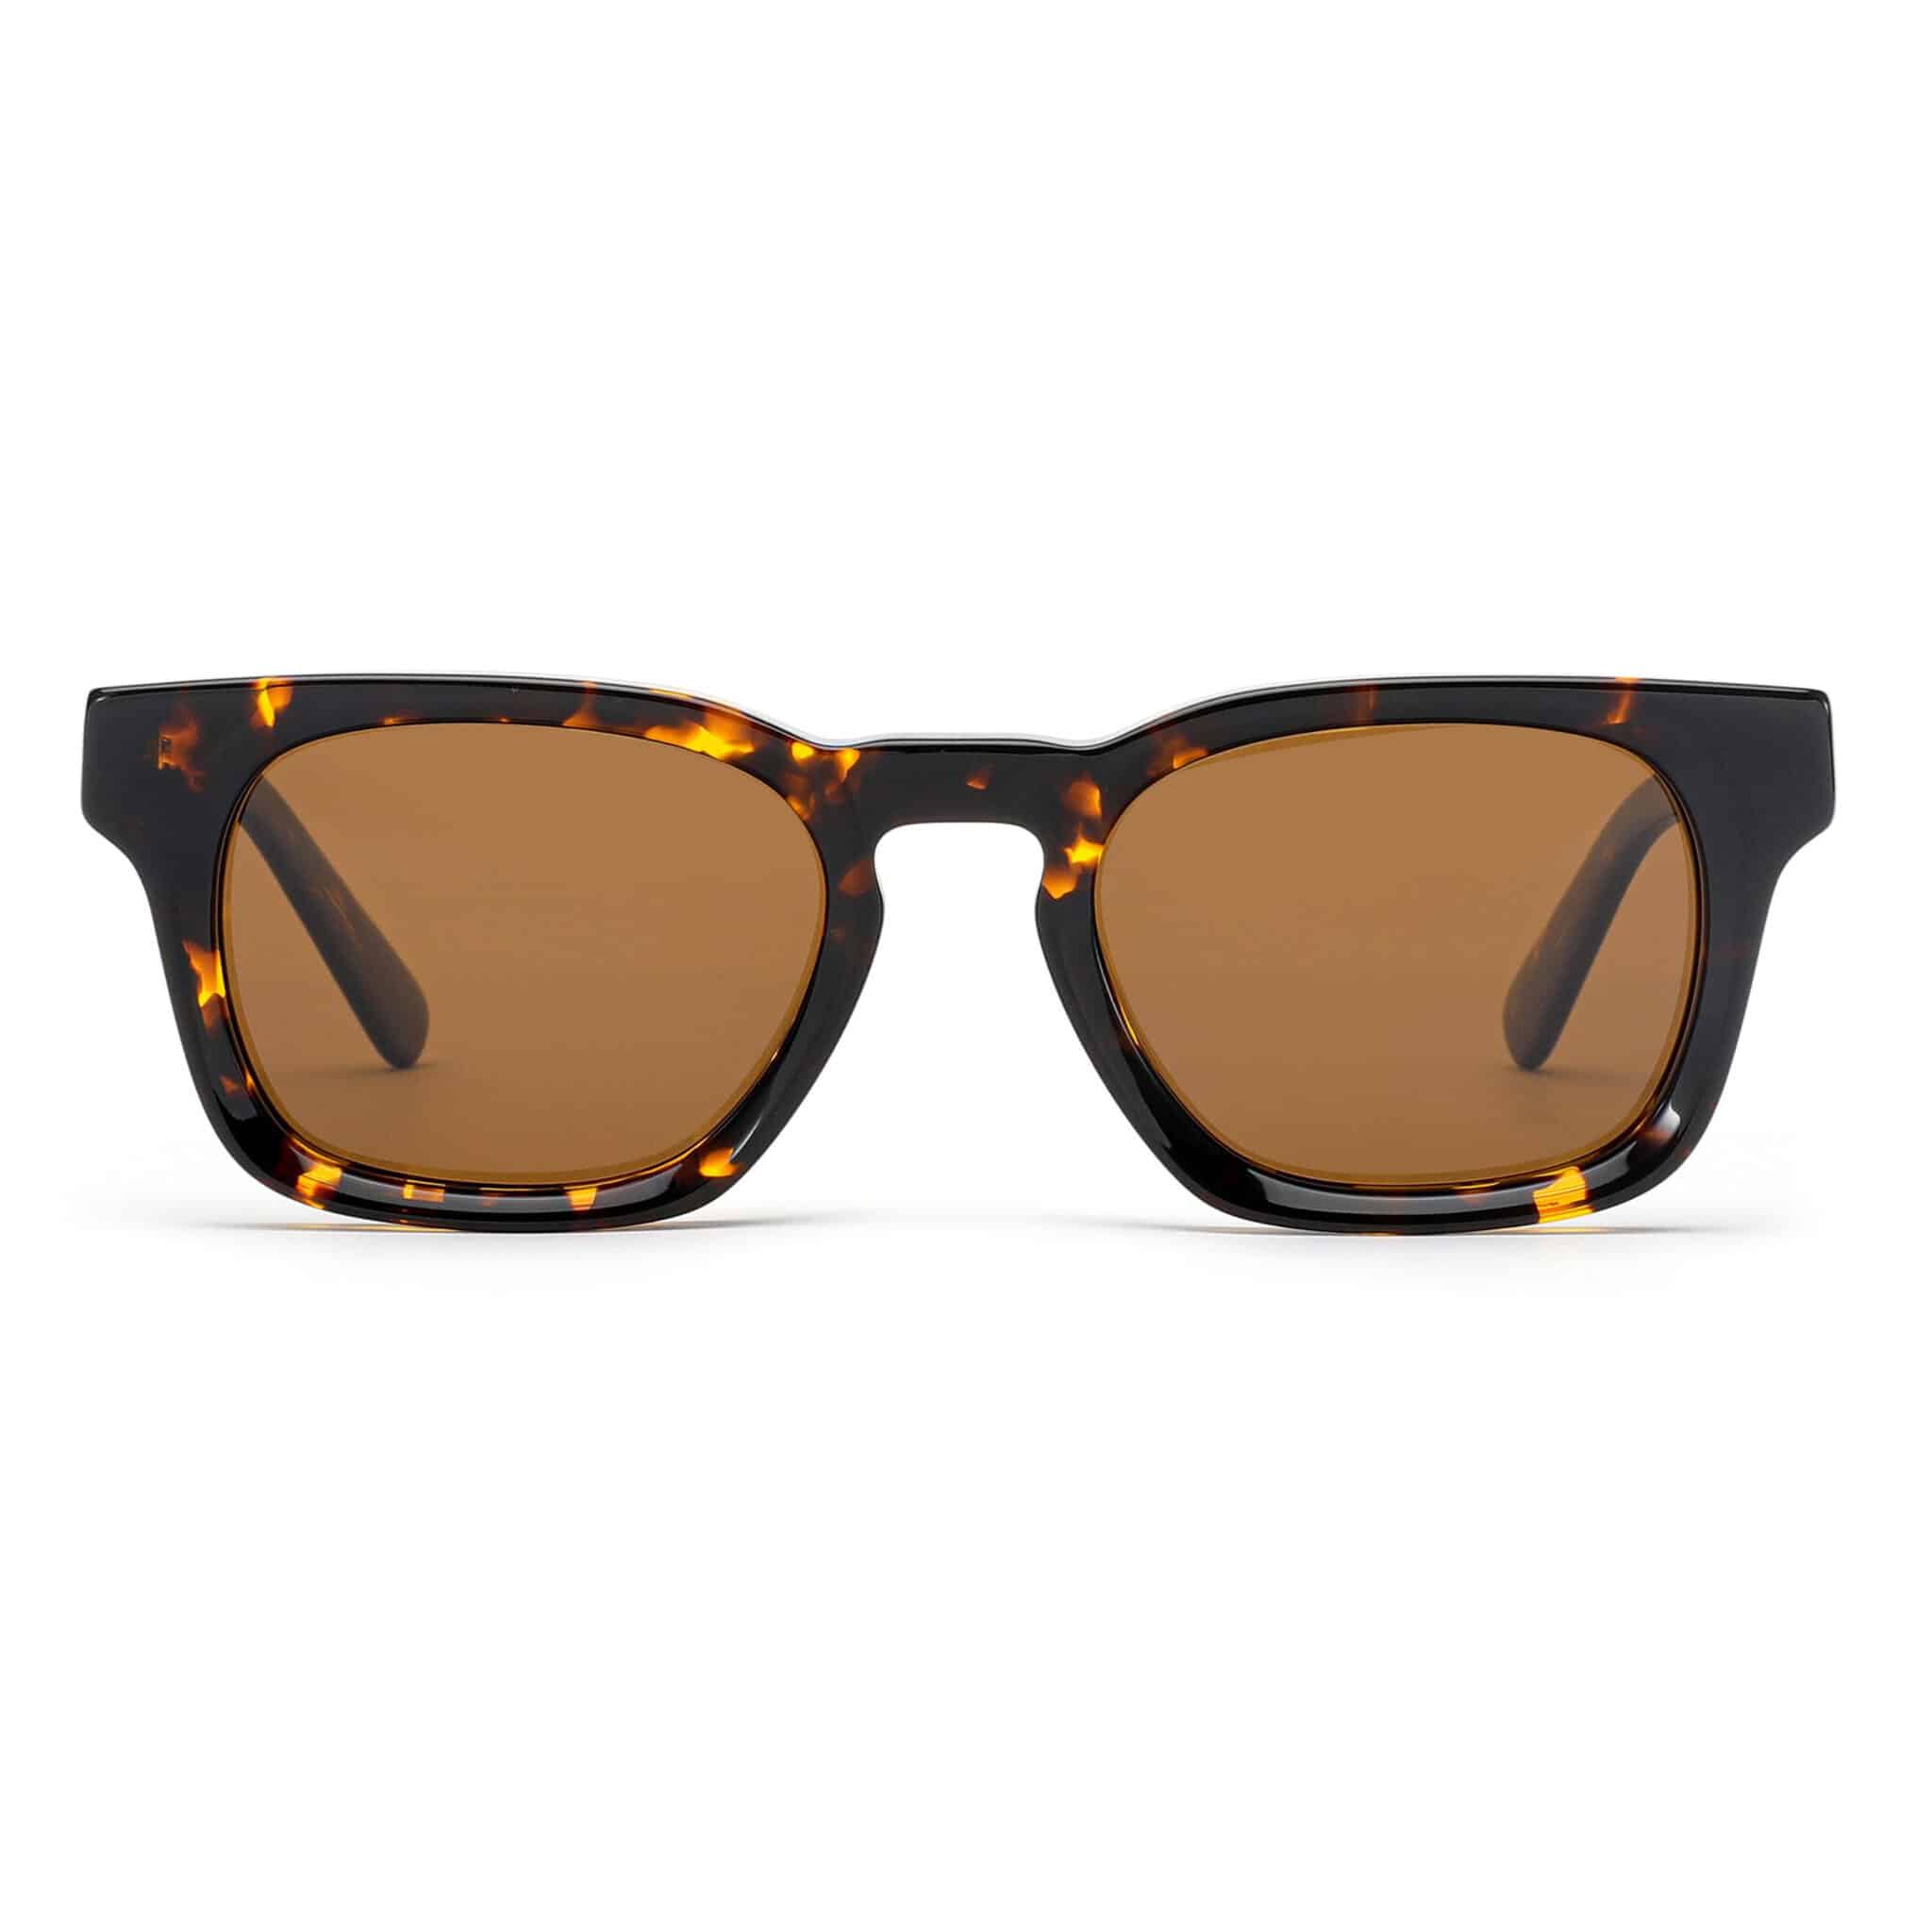 Square Tortoise Sunglasses for Men